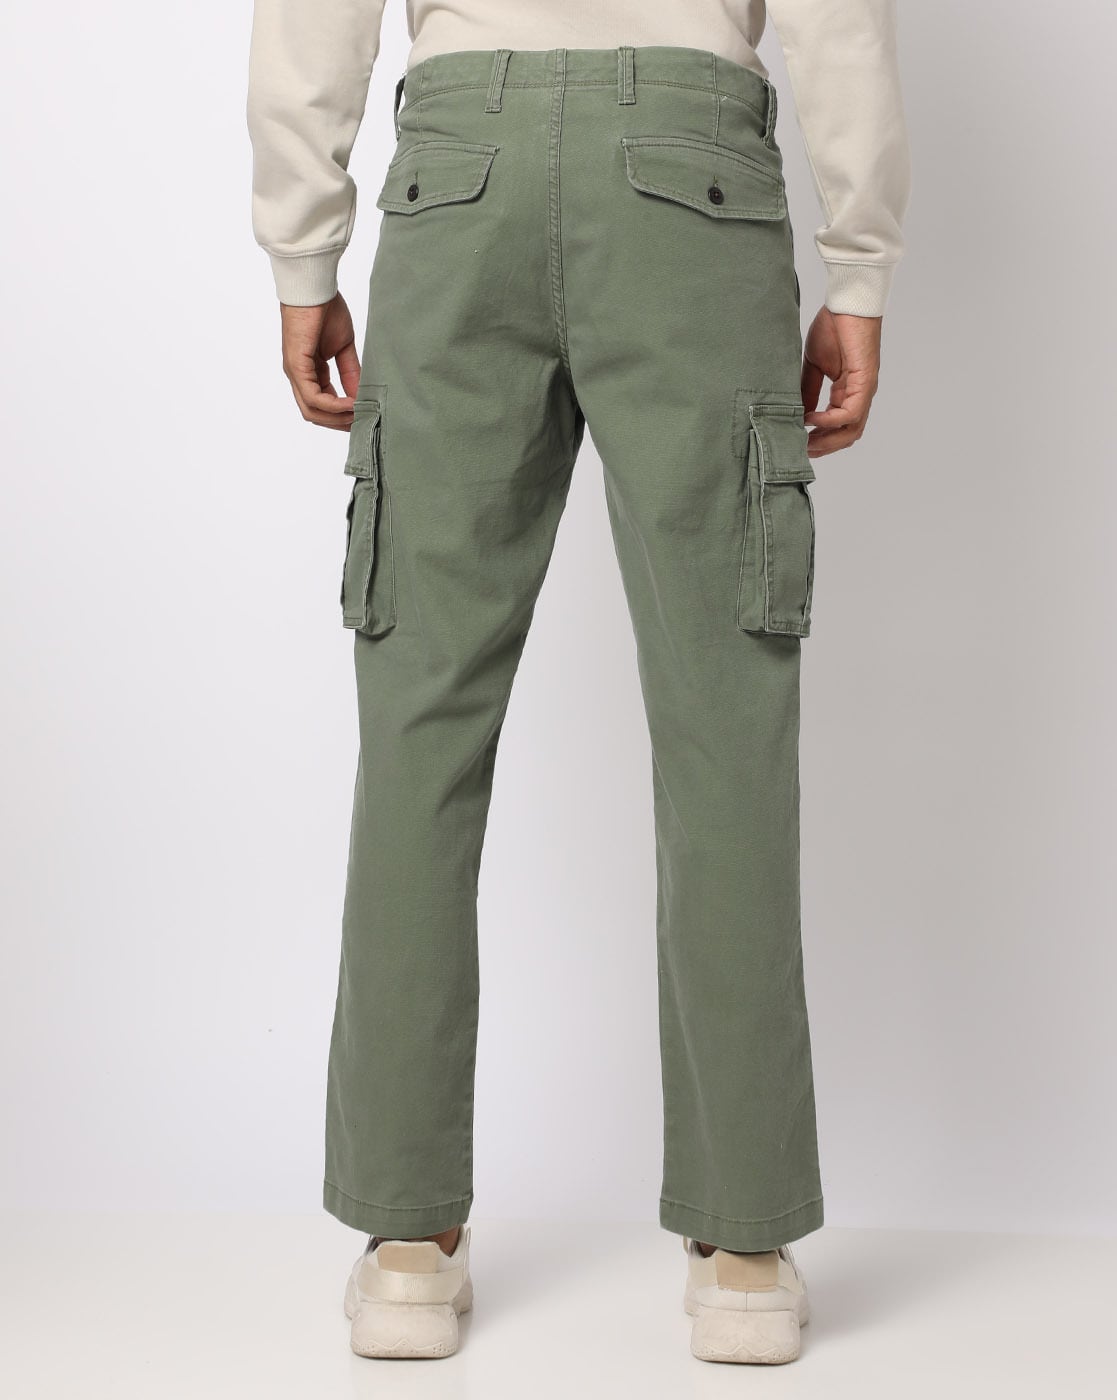 Gap  Cargo pants Pants Mens fashion streetwear